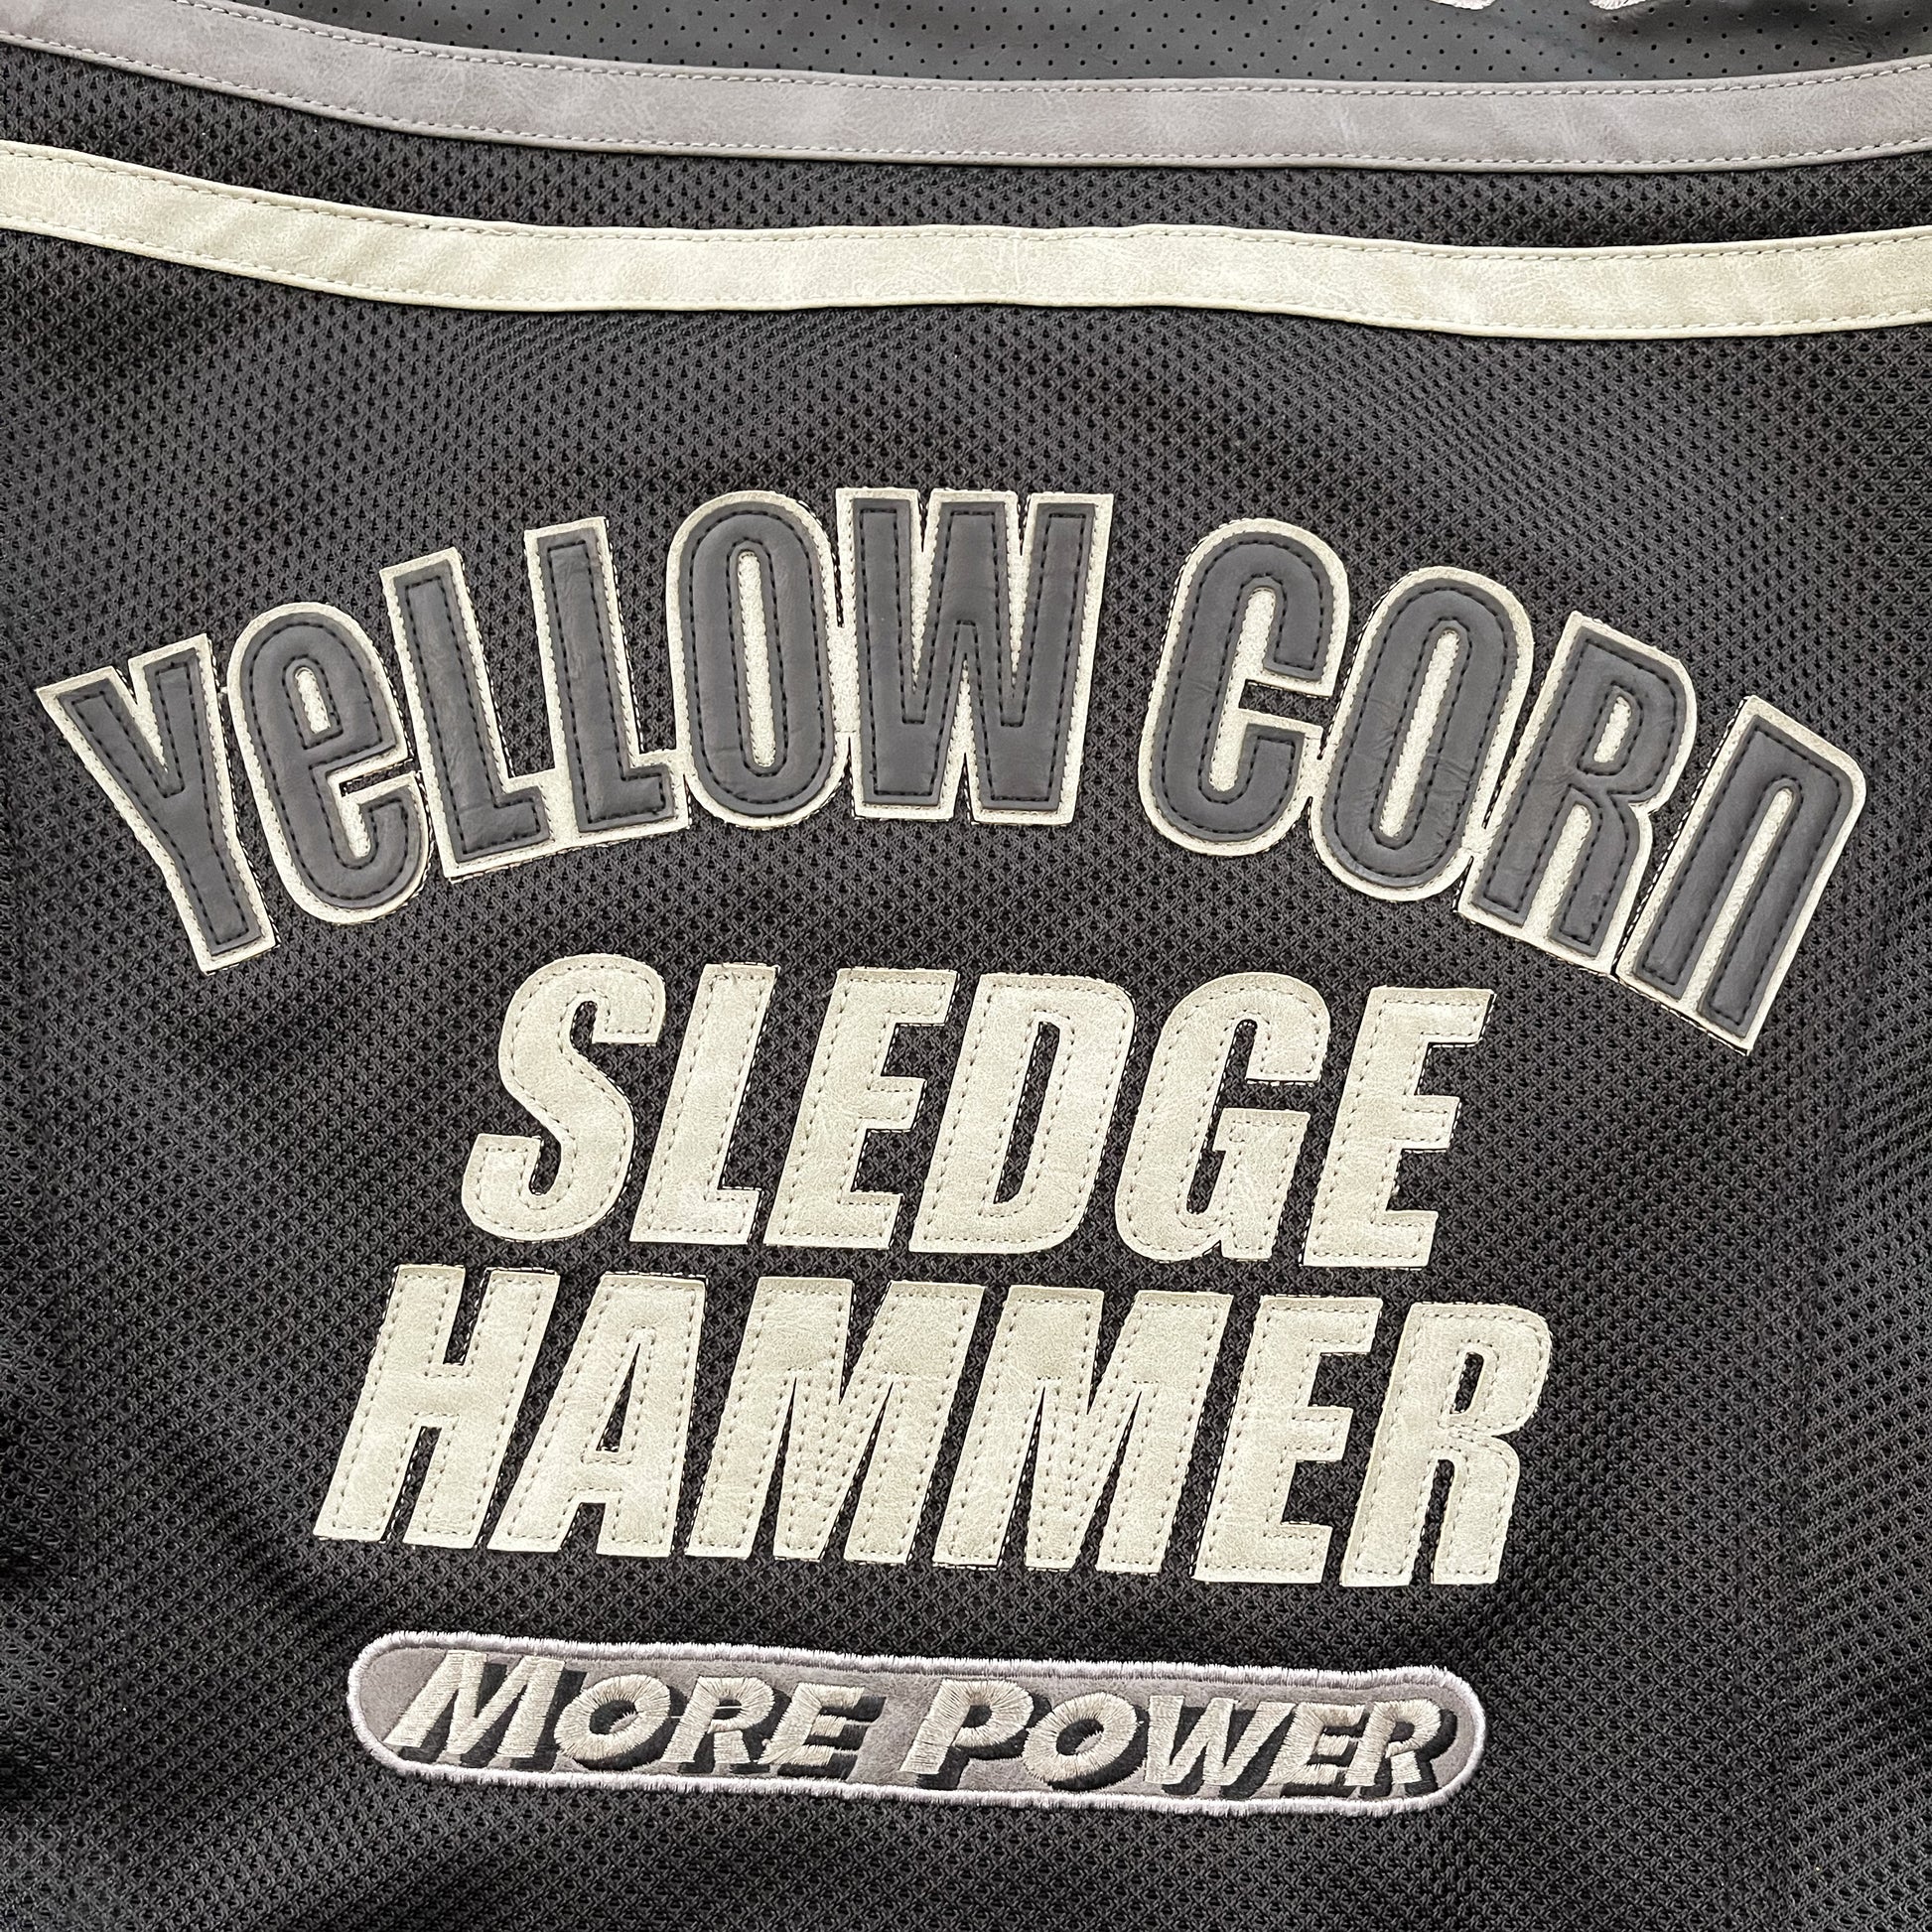 Yellow Corn Motorcycle Racer Jacket